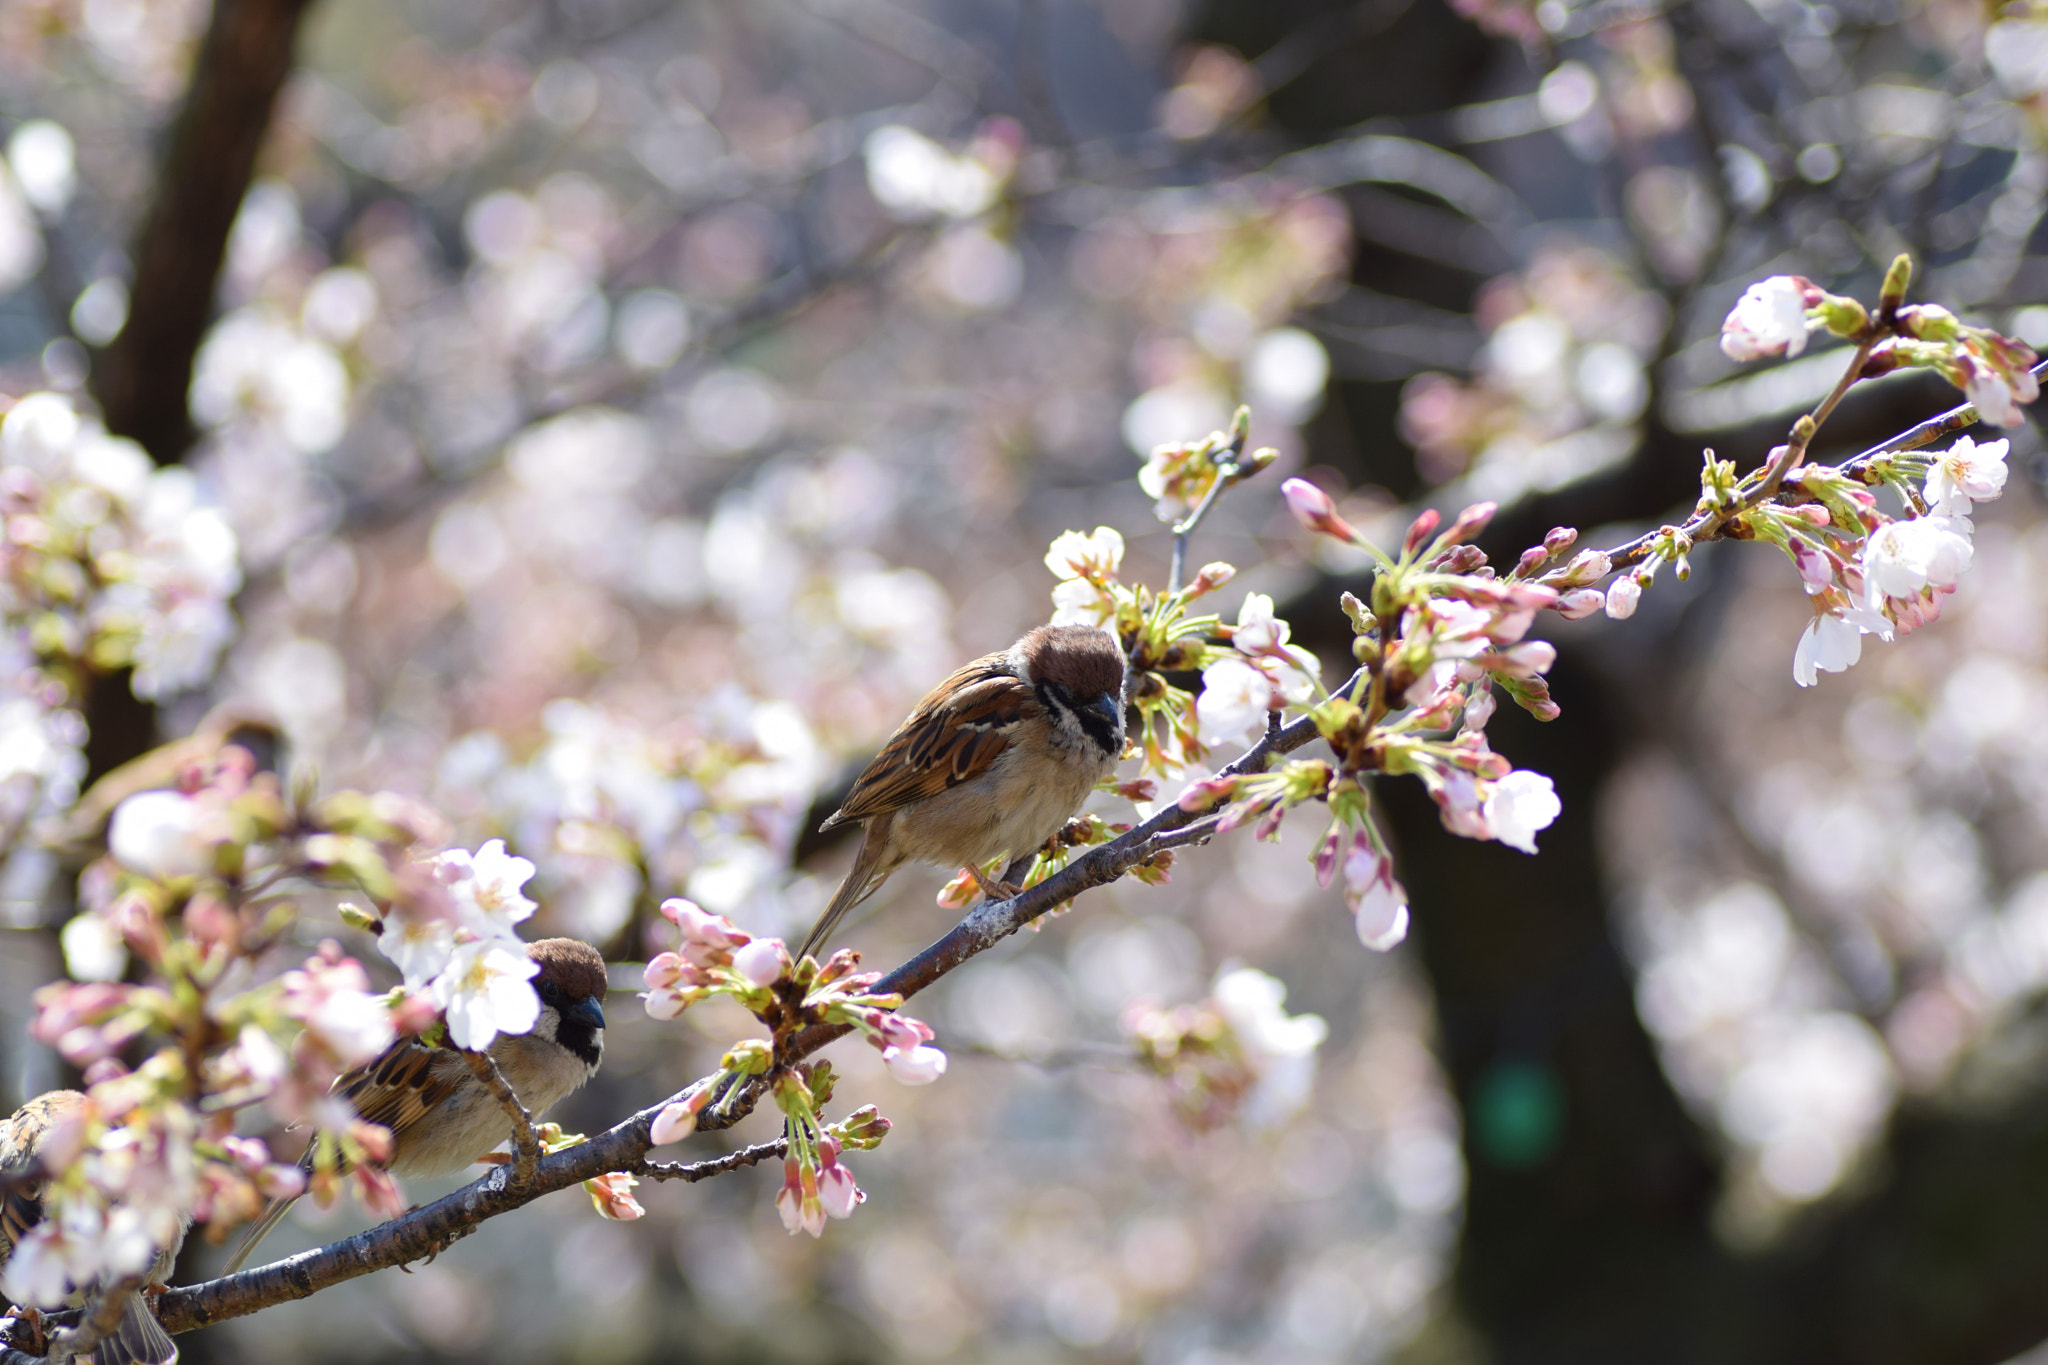 Nikon D3300 sample photo. Birds enjoy spring photography